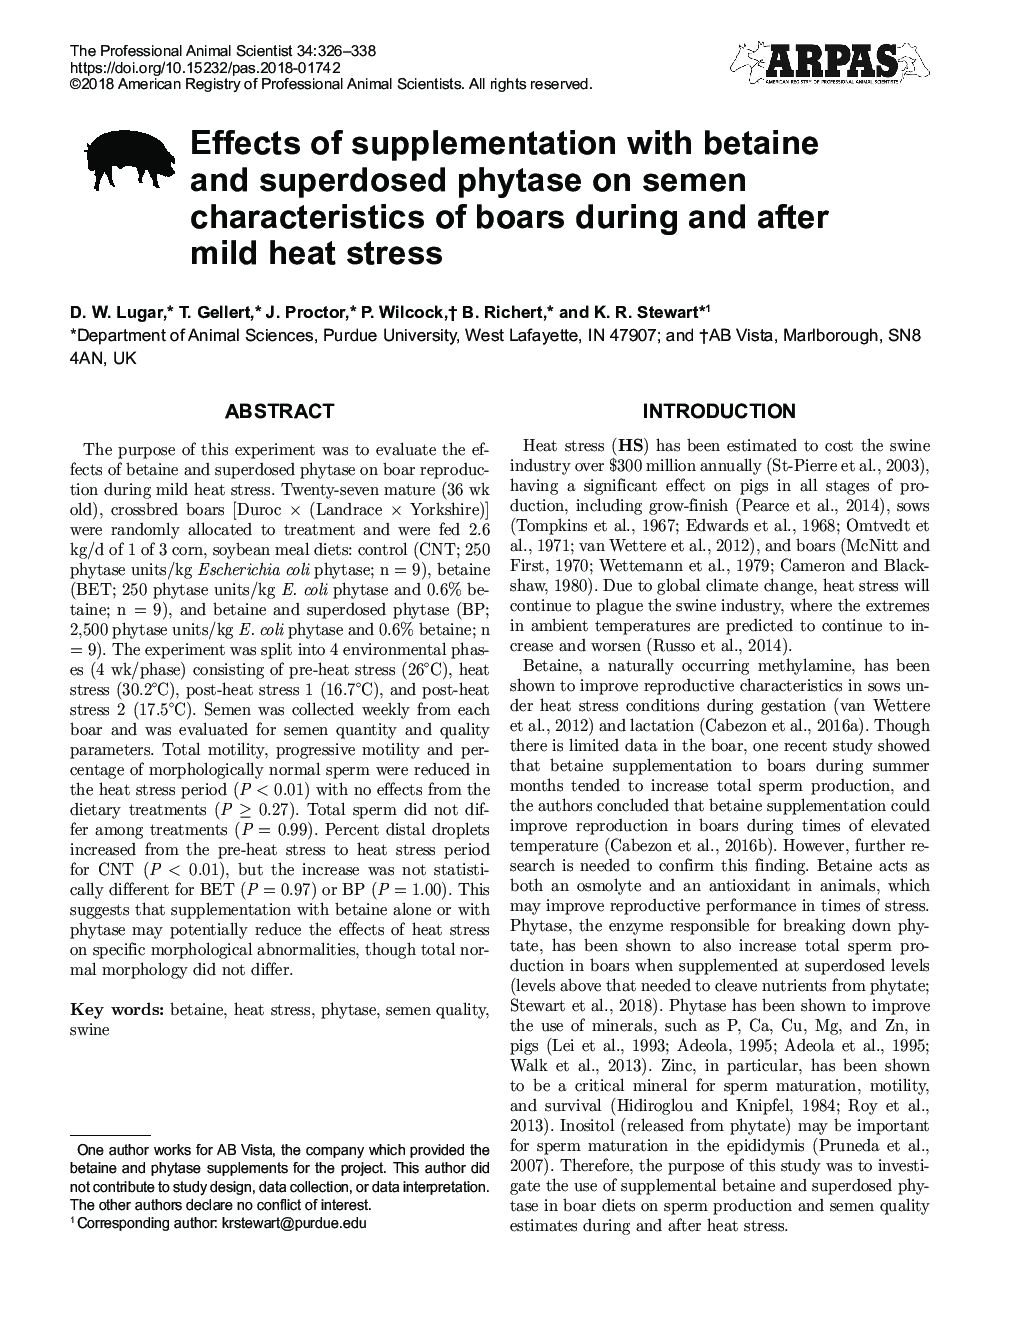 تأثیر مکمل های بتایین و فیتاز فوق باکتری بر ویژگی های اسپرم های گراز در طول و پس از استرس گرما خفیف 